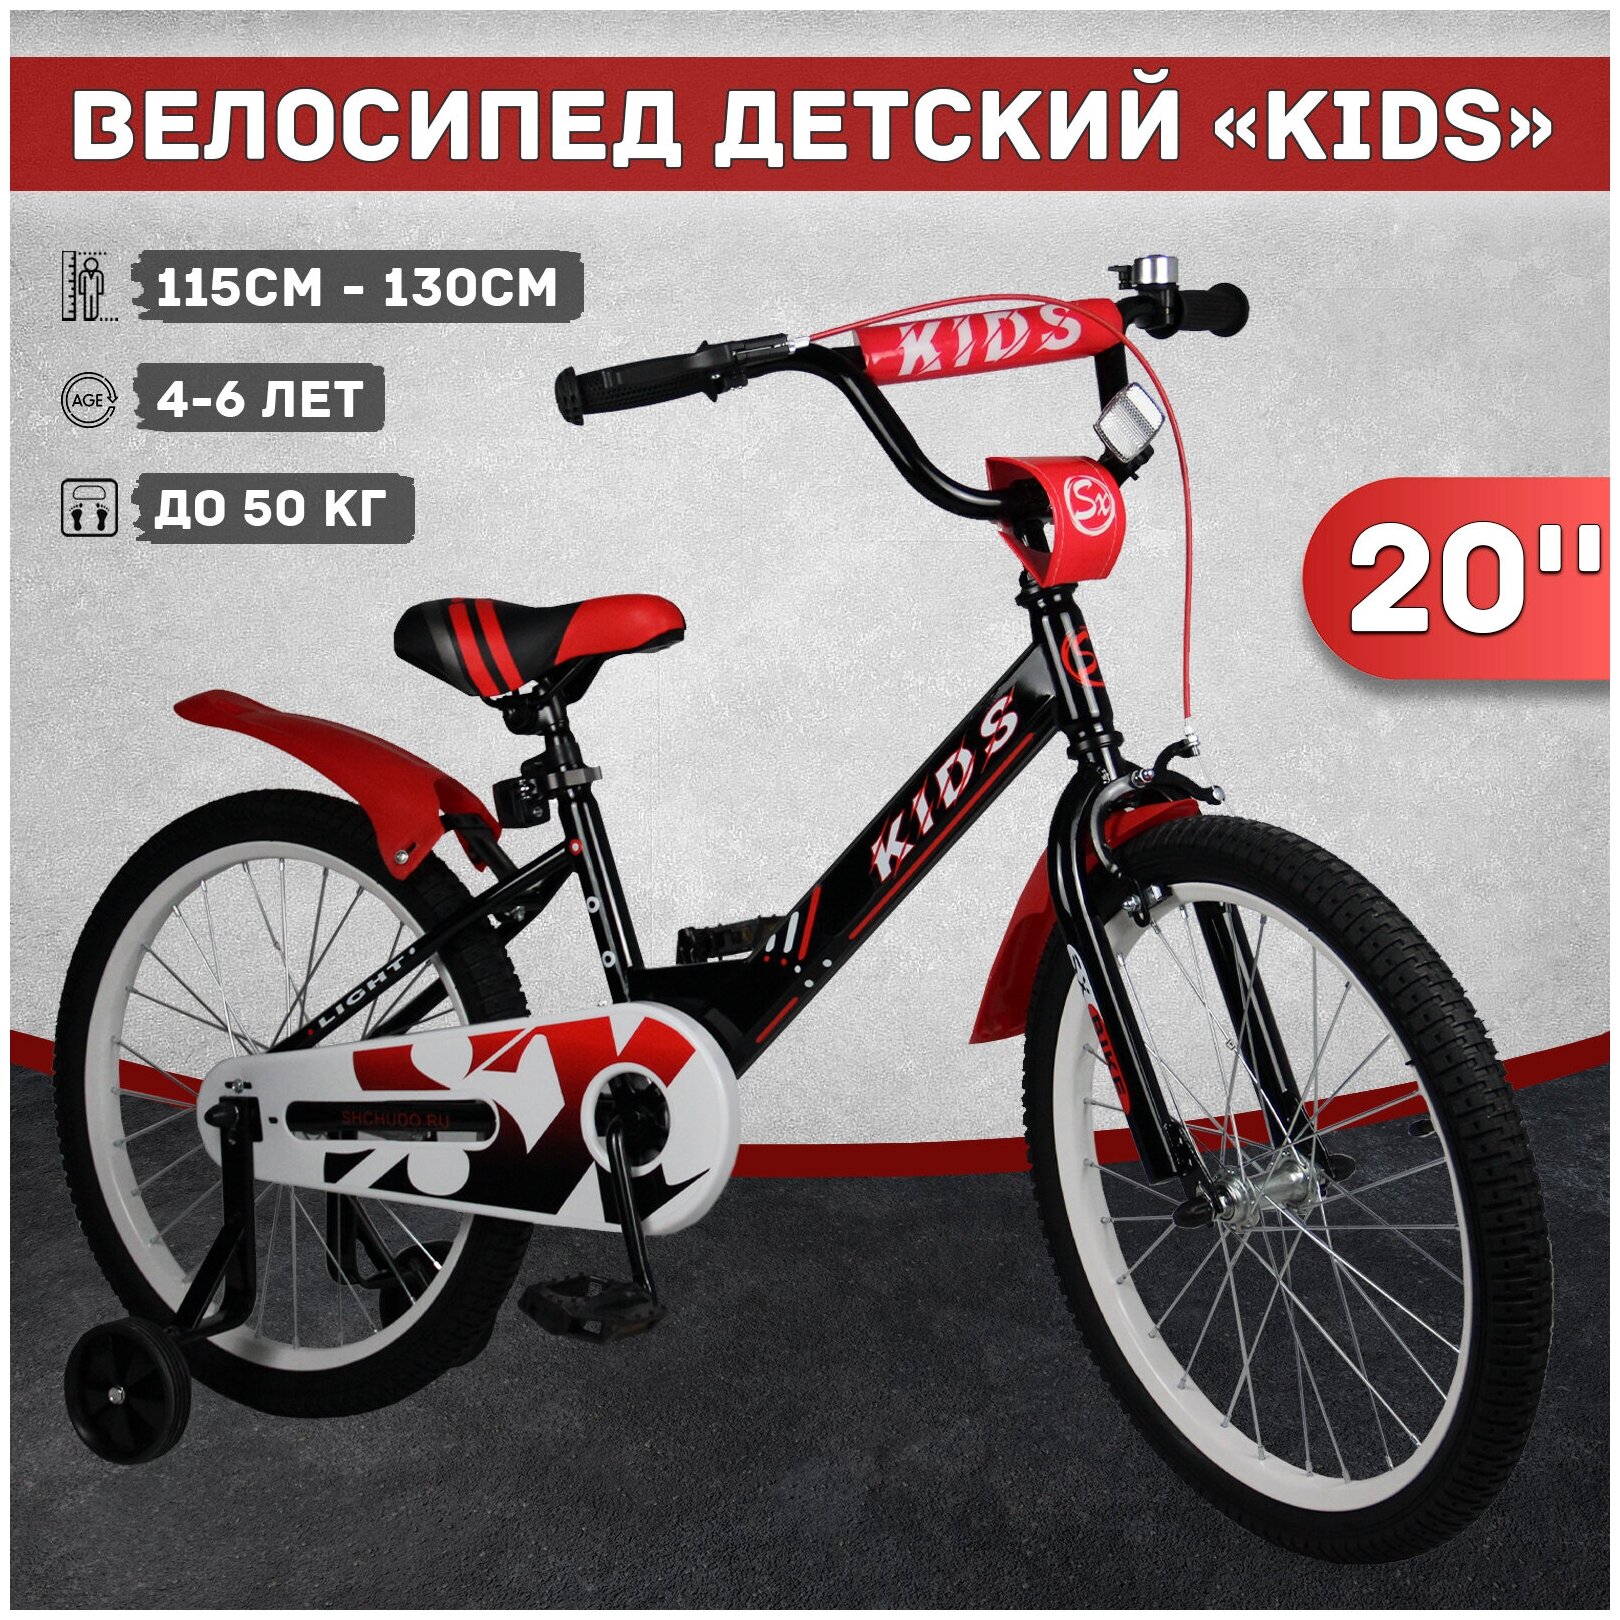 Велосипед детский Kids 20", рост 115-130 см, 4-6 лет, черный